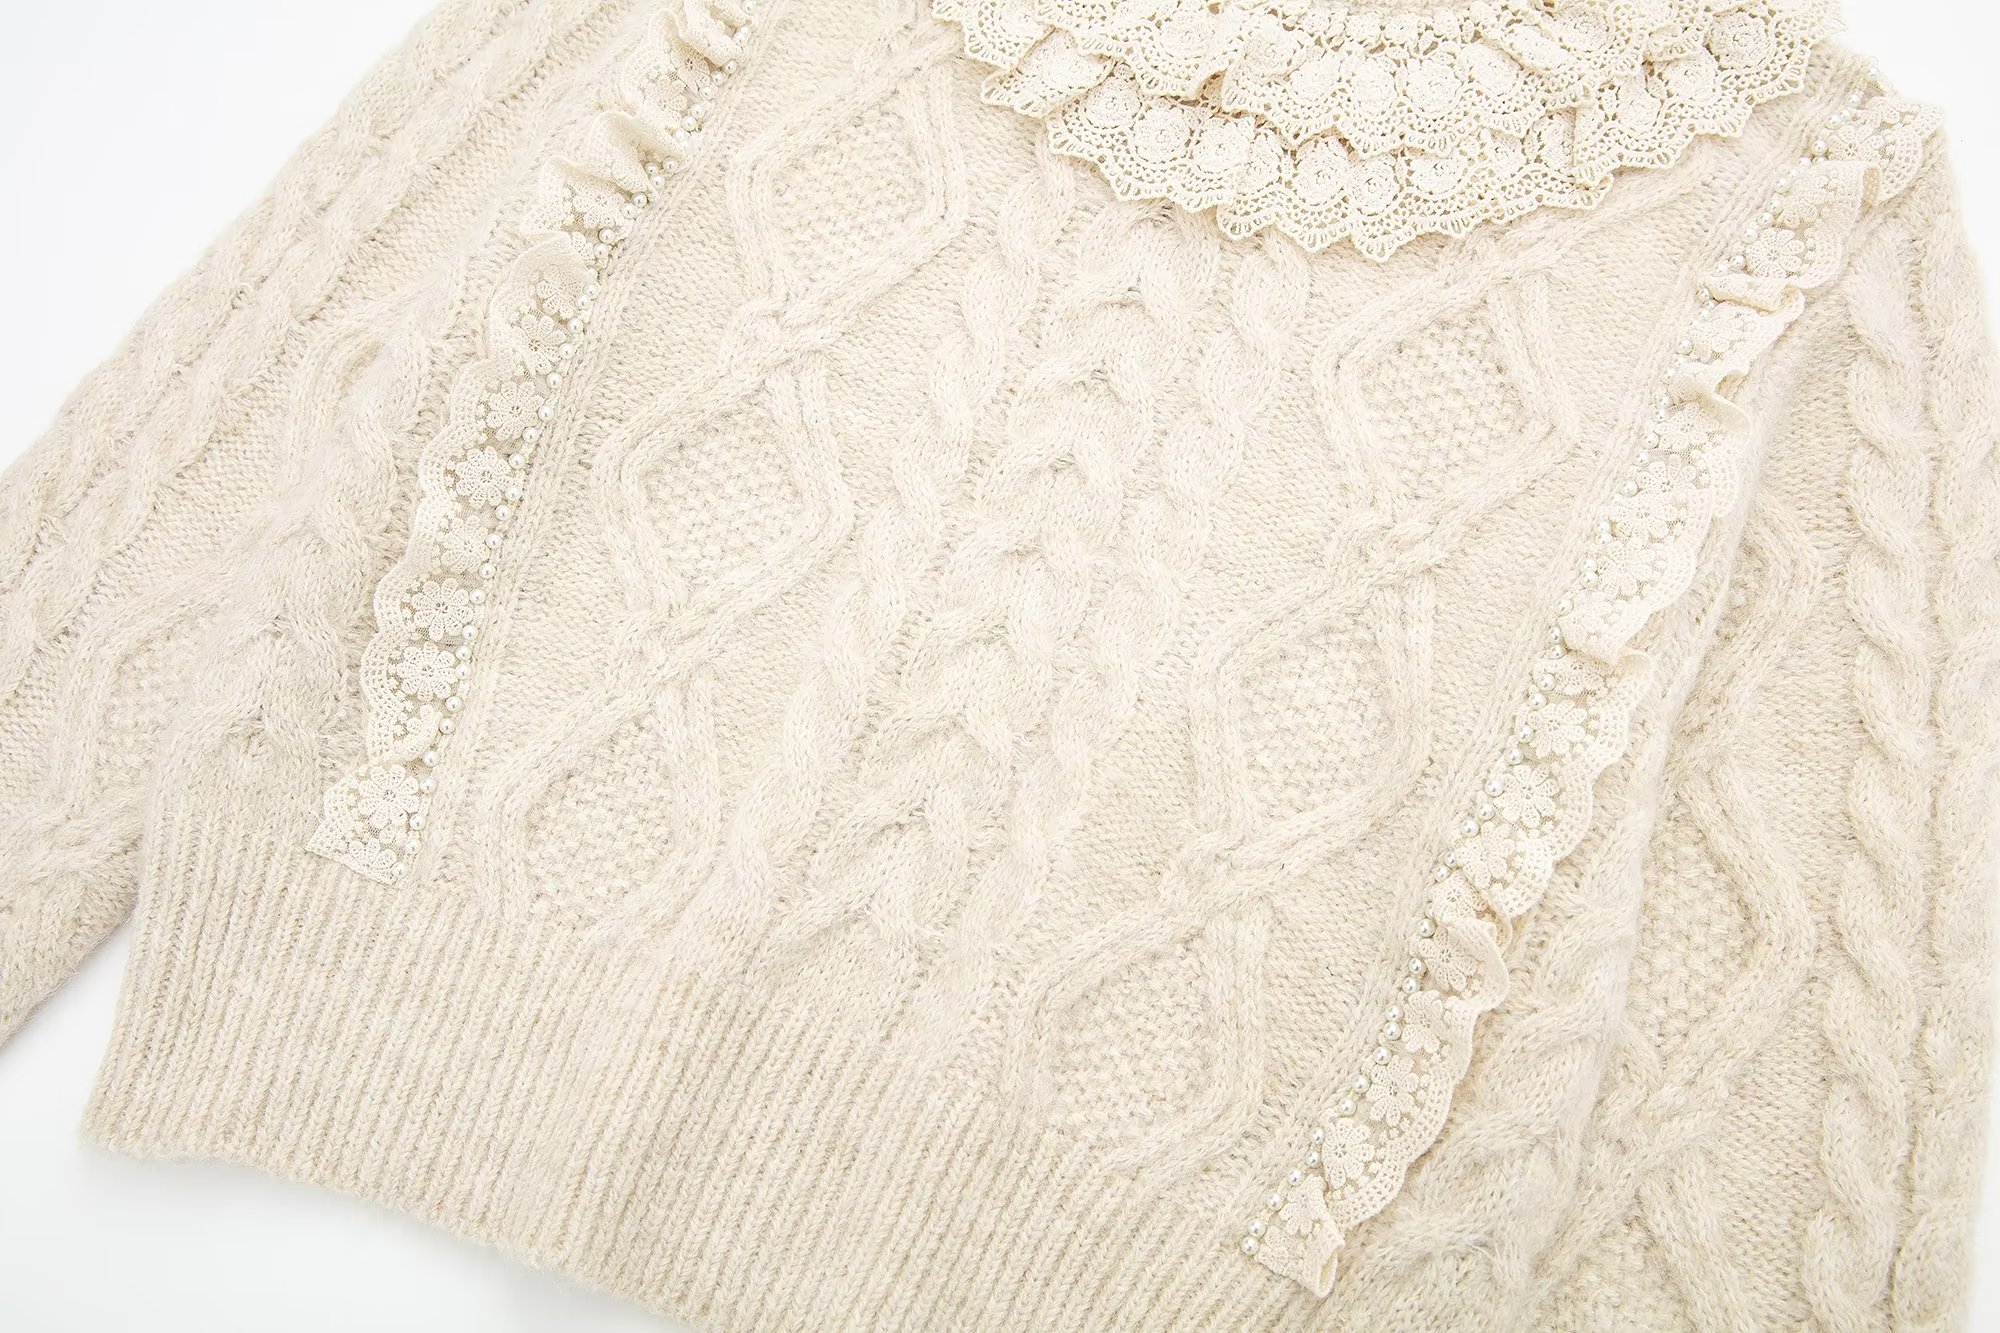 Woven Decorative Round Neck Pullover - Sweaters - Uniqistic.com